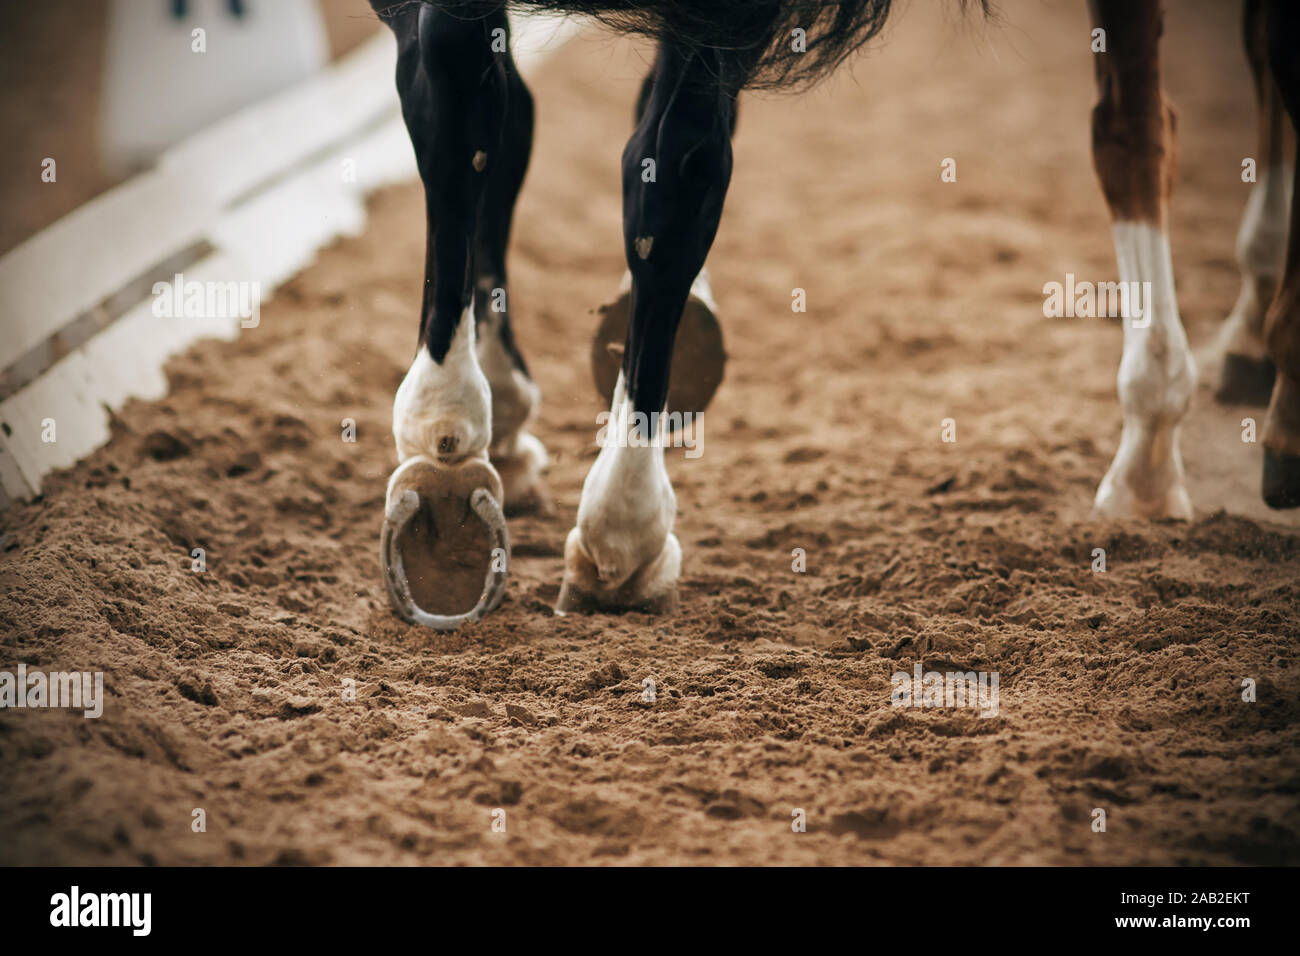 Die Gestiefelt, grazilen Beine von einem schwarzen Pferd neben einem anderen Pferd in eine sandige Arena in einer Dressur läuft. Stockfoto